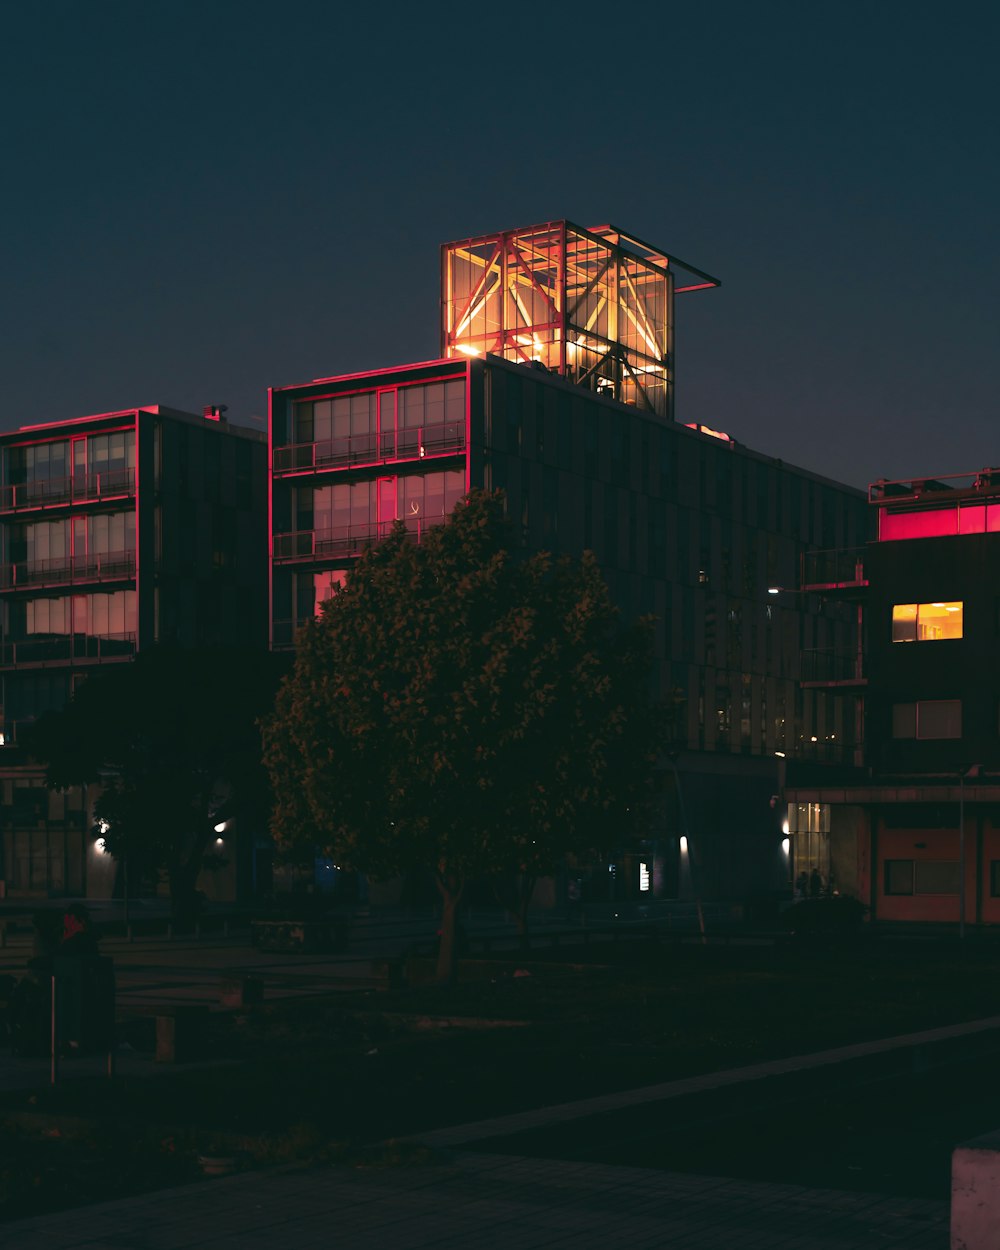 밤에 불이 켜진 건물 앞에 나무가 있는 건물